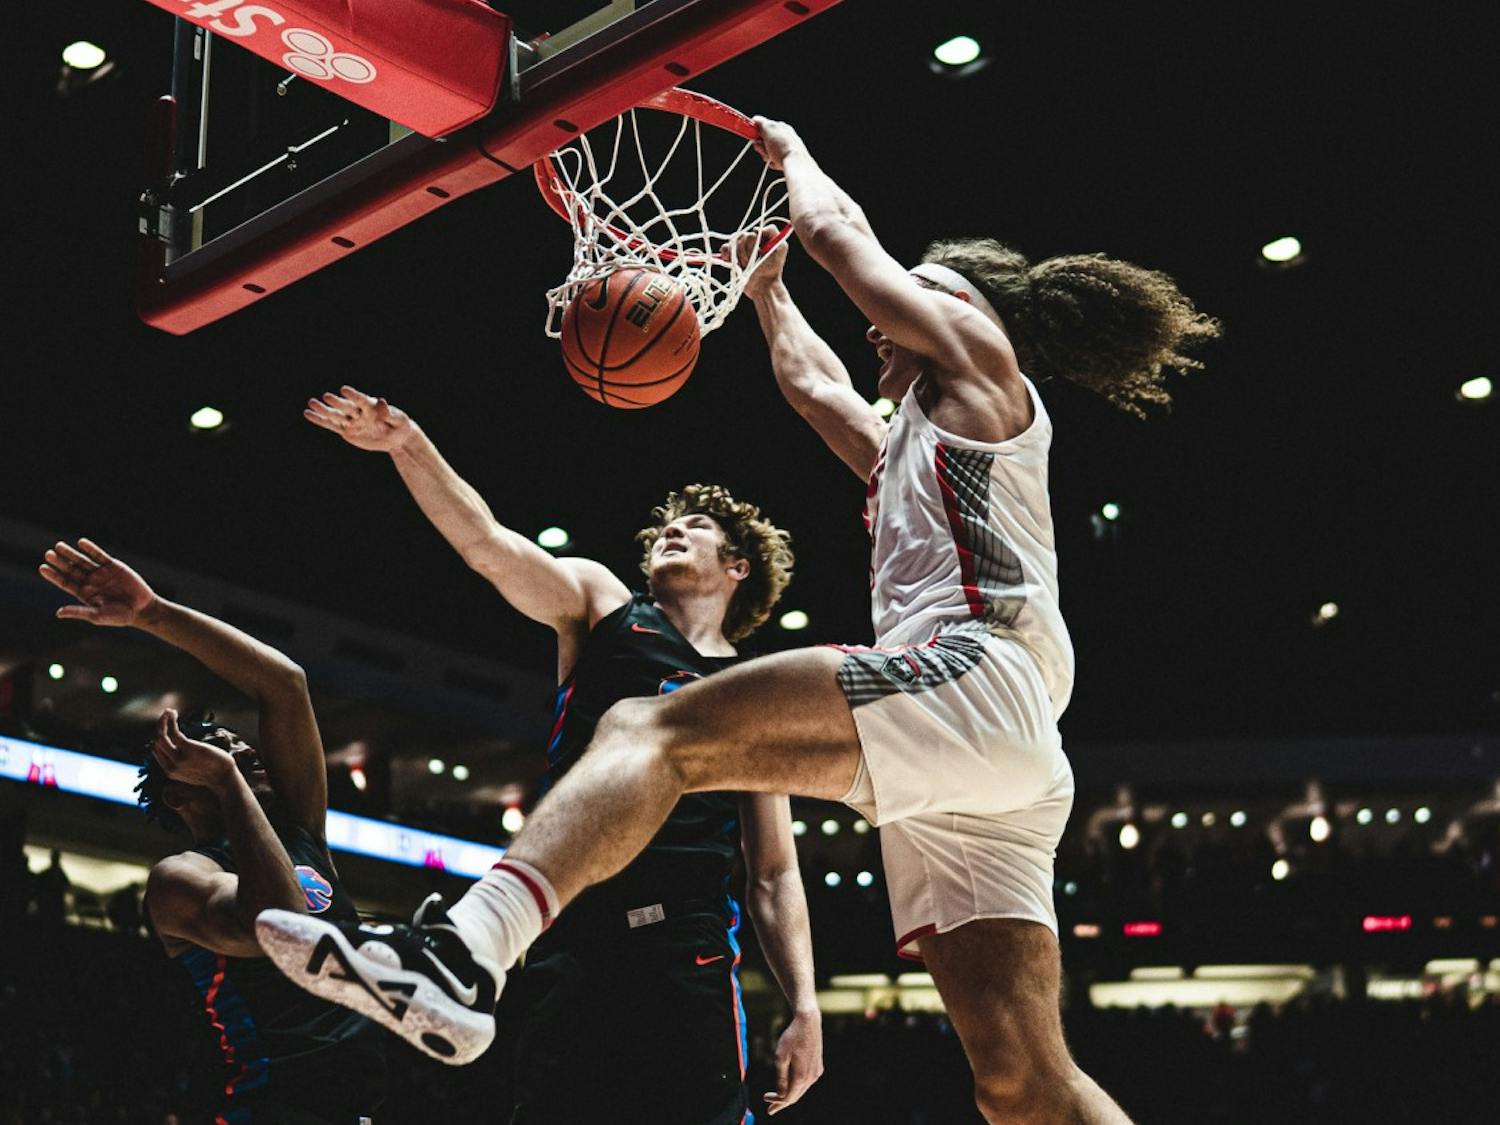 GALLERY: Men's Basketball vs. Boise State